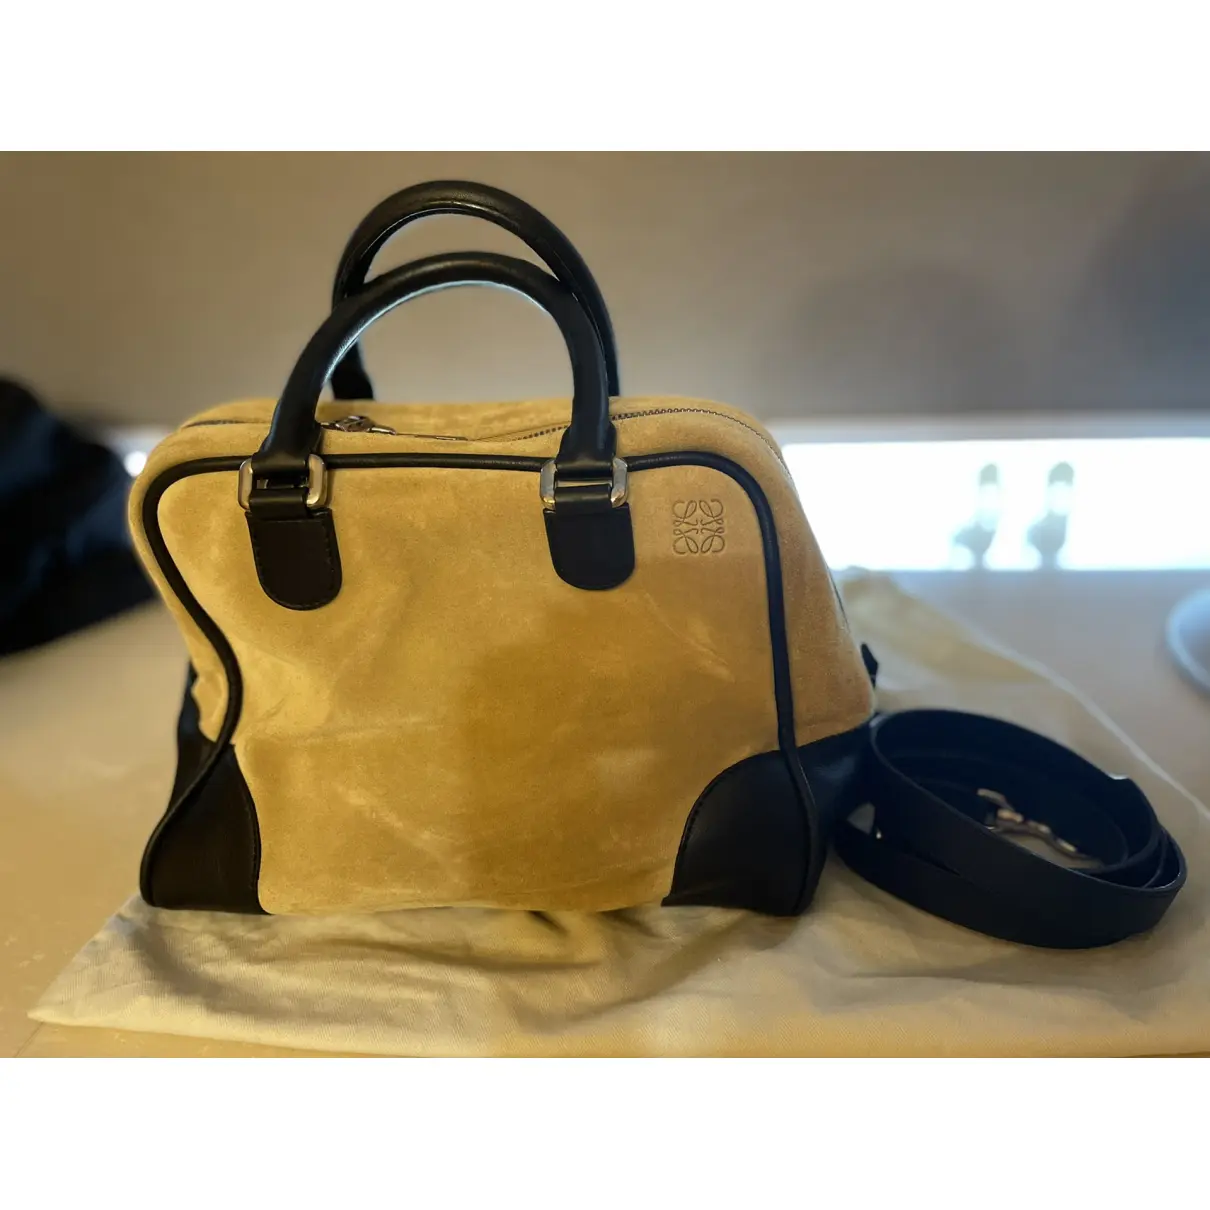 Buy Loewe Amazona 75 handbag online